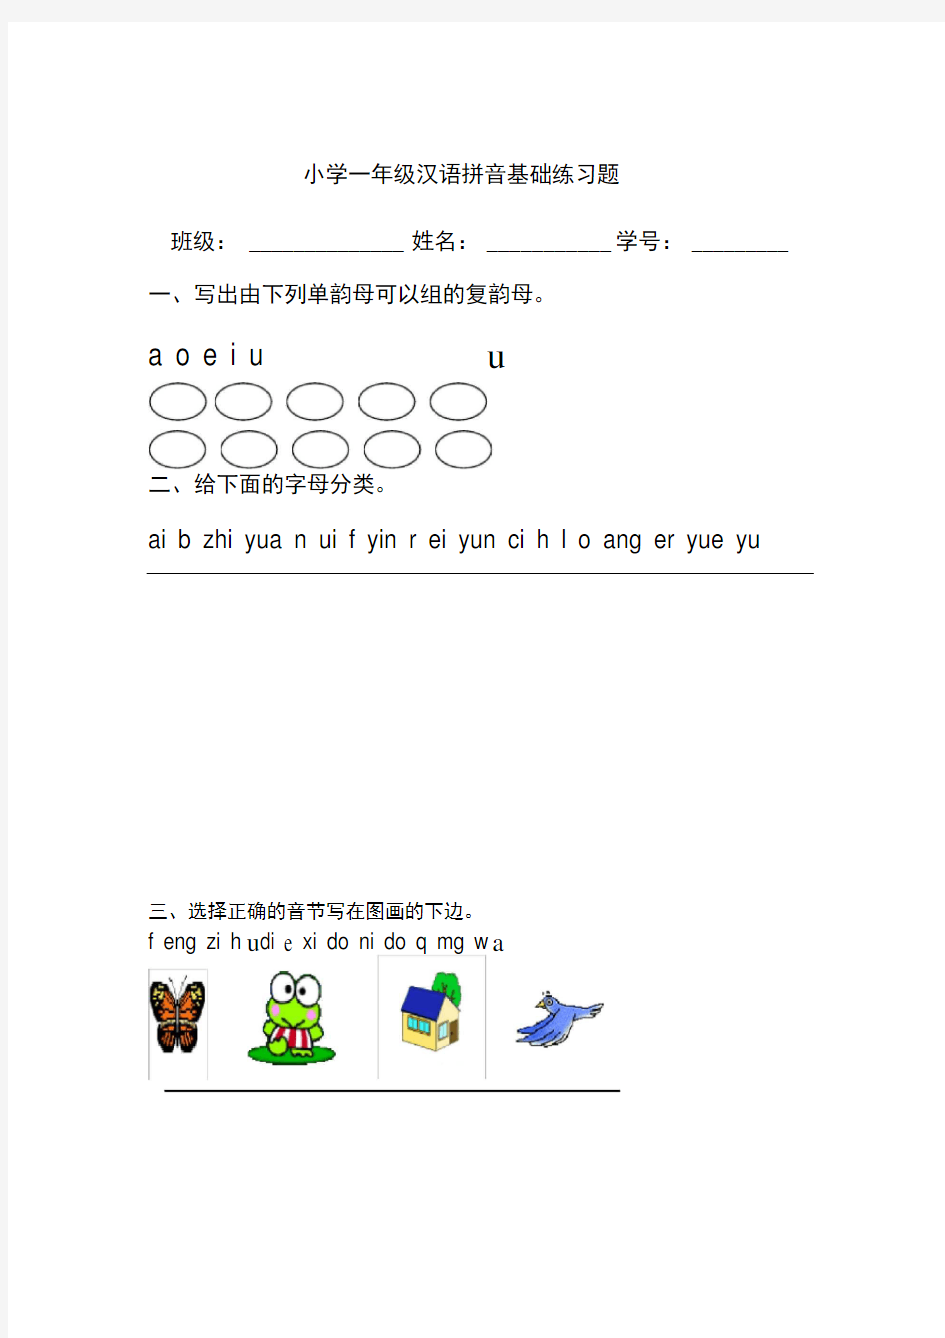 完整小学一年级汉语拼音基础练习题合集